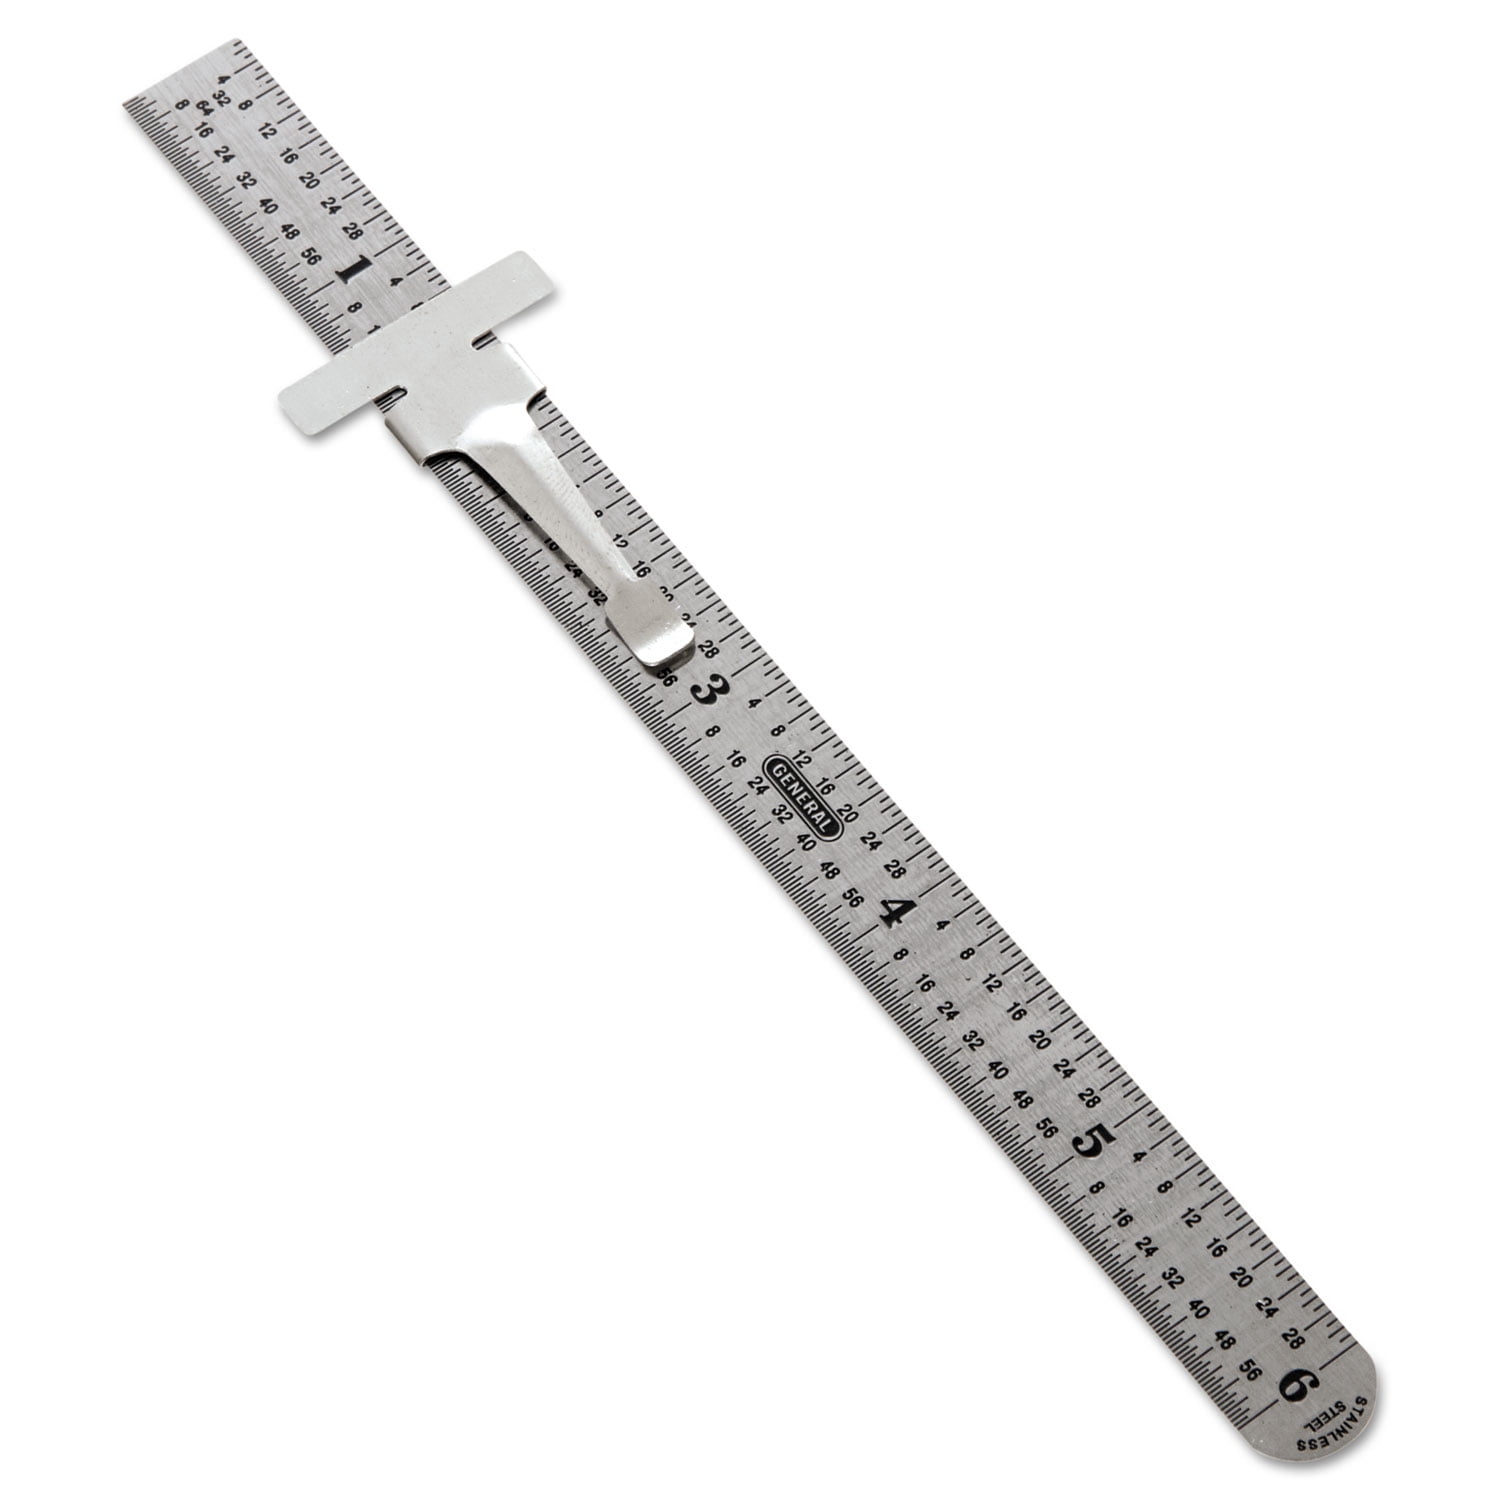 Metal Ruler 6 inch Metric and American 